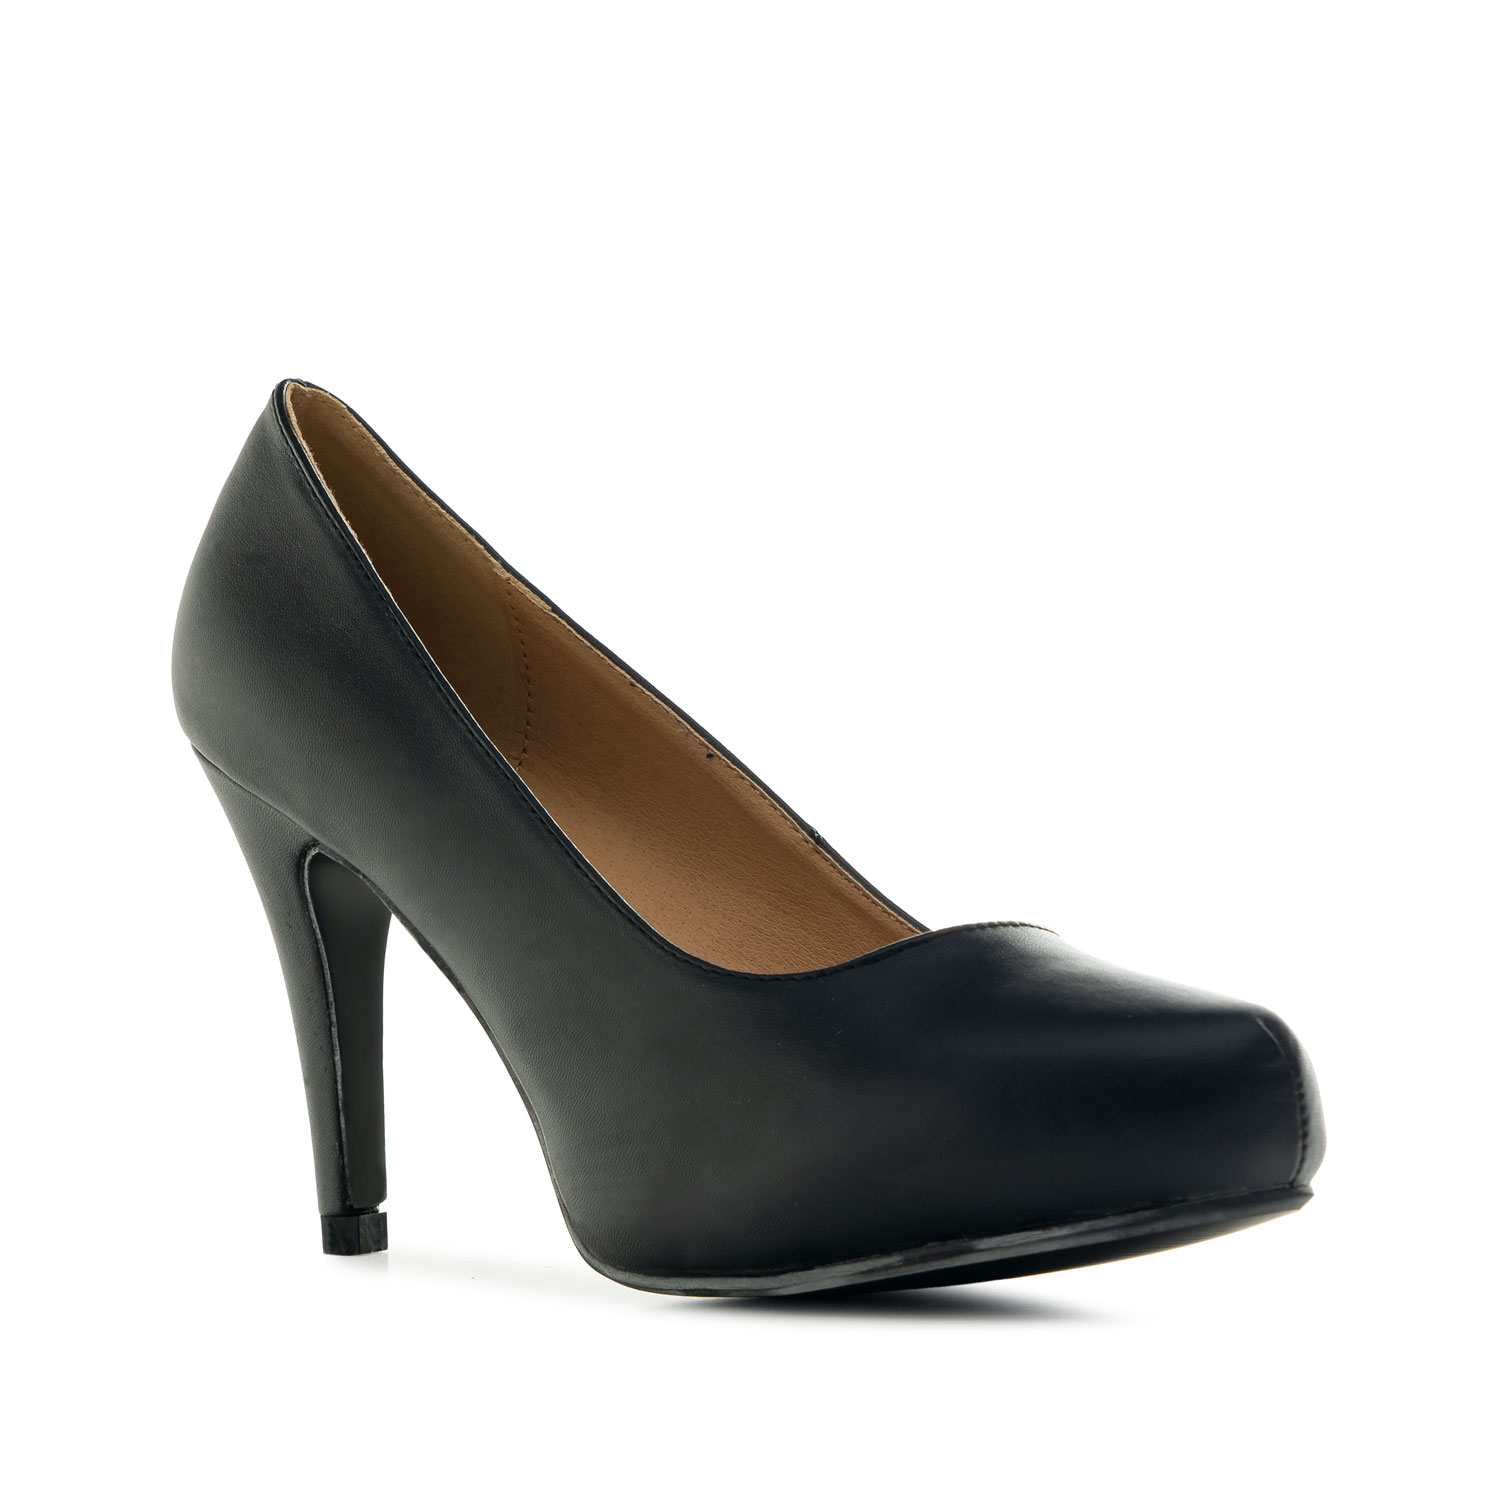 Zapatos Salón Mujer Piel Negro Tacón Tallas Grandes